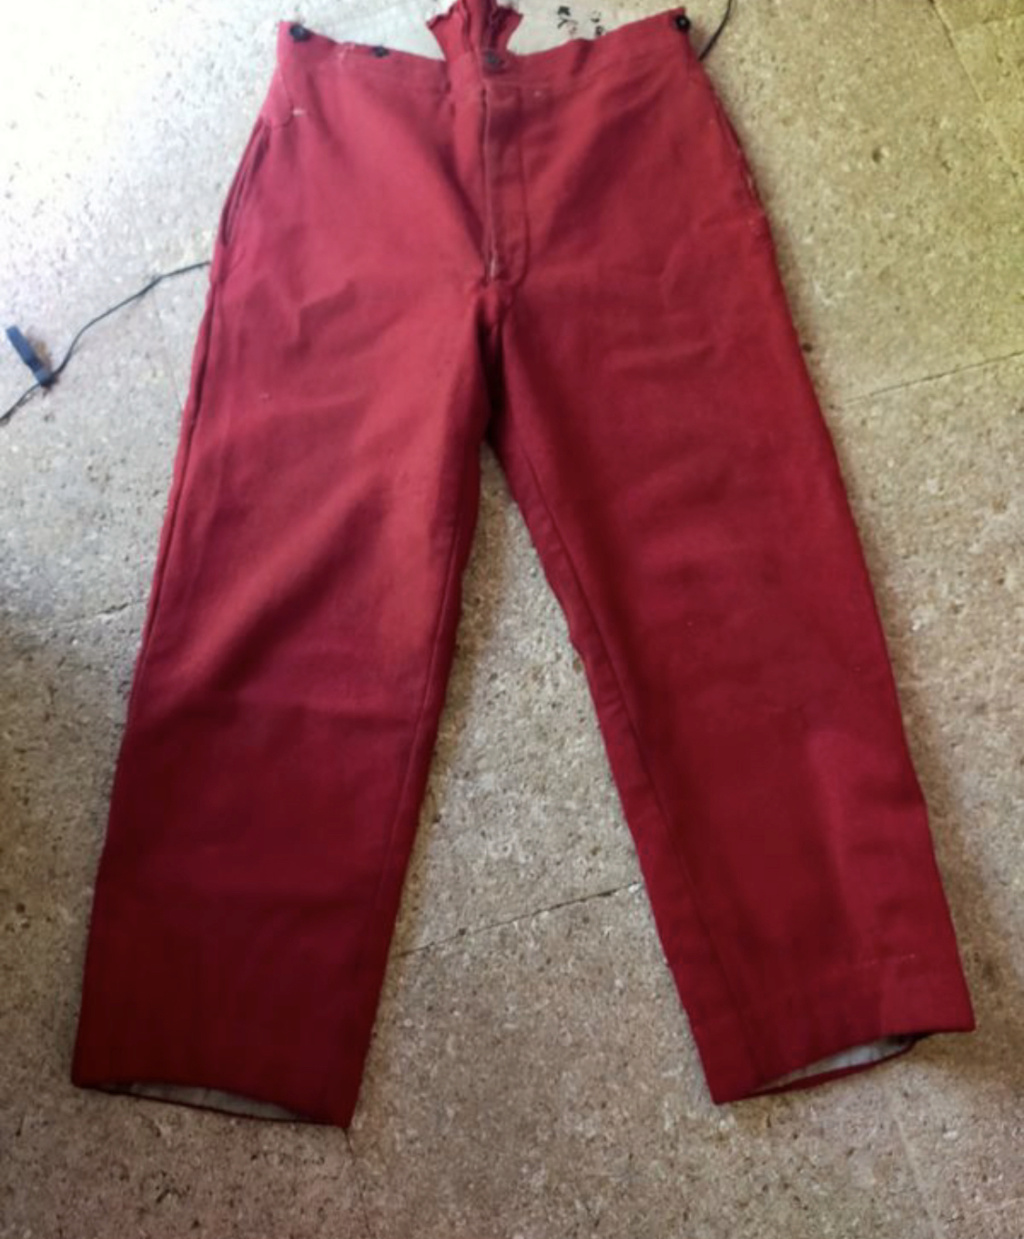 Pantalon rouge garance A000a710